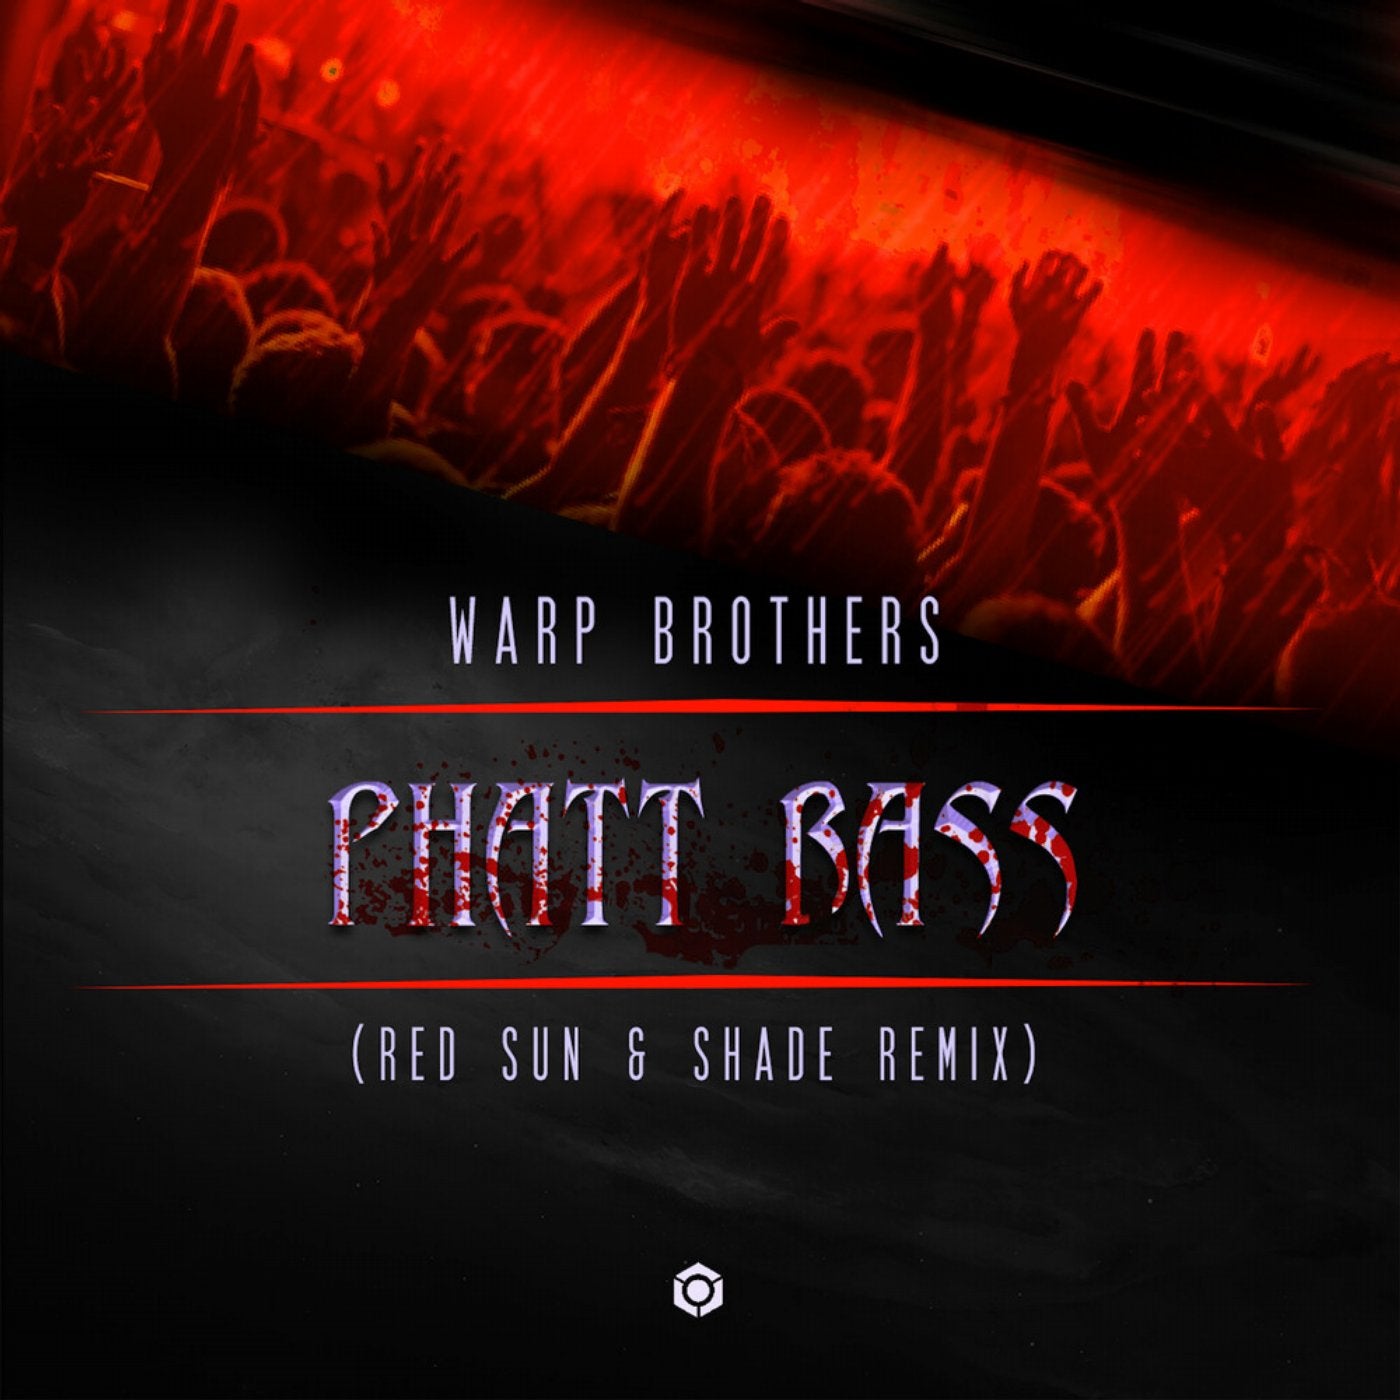 Phatt bass. Warp brothers - phatt Bass. Warp brothers - phatt Bass (Warp brothers Bass Mix) релиз. "Warp brothers vs. Aquagen" "phatt Bass & we will Survive (Maxi Single)".